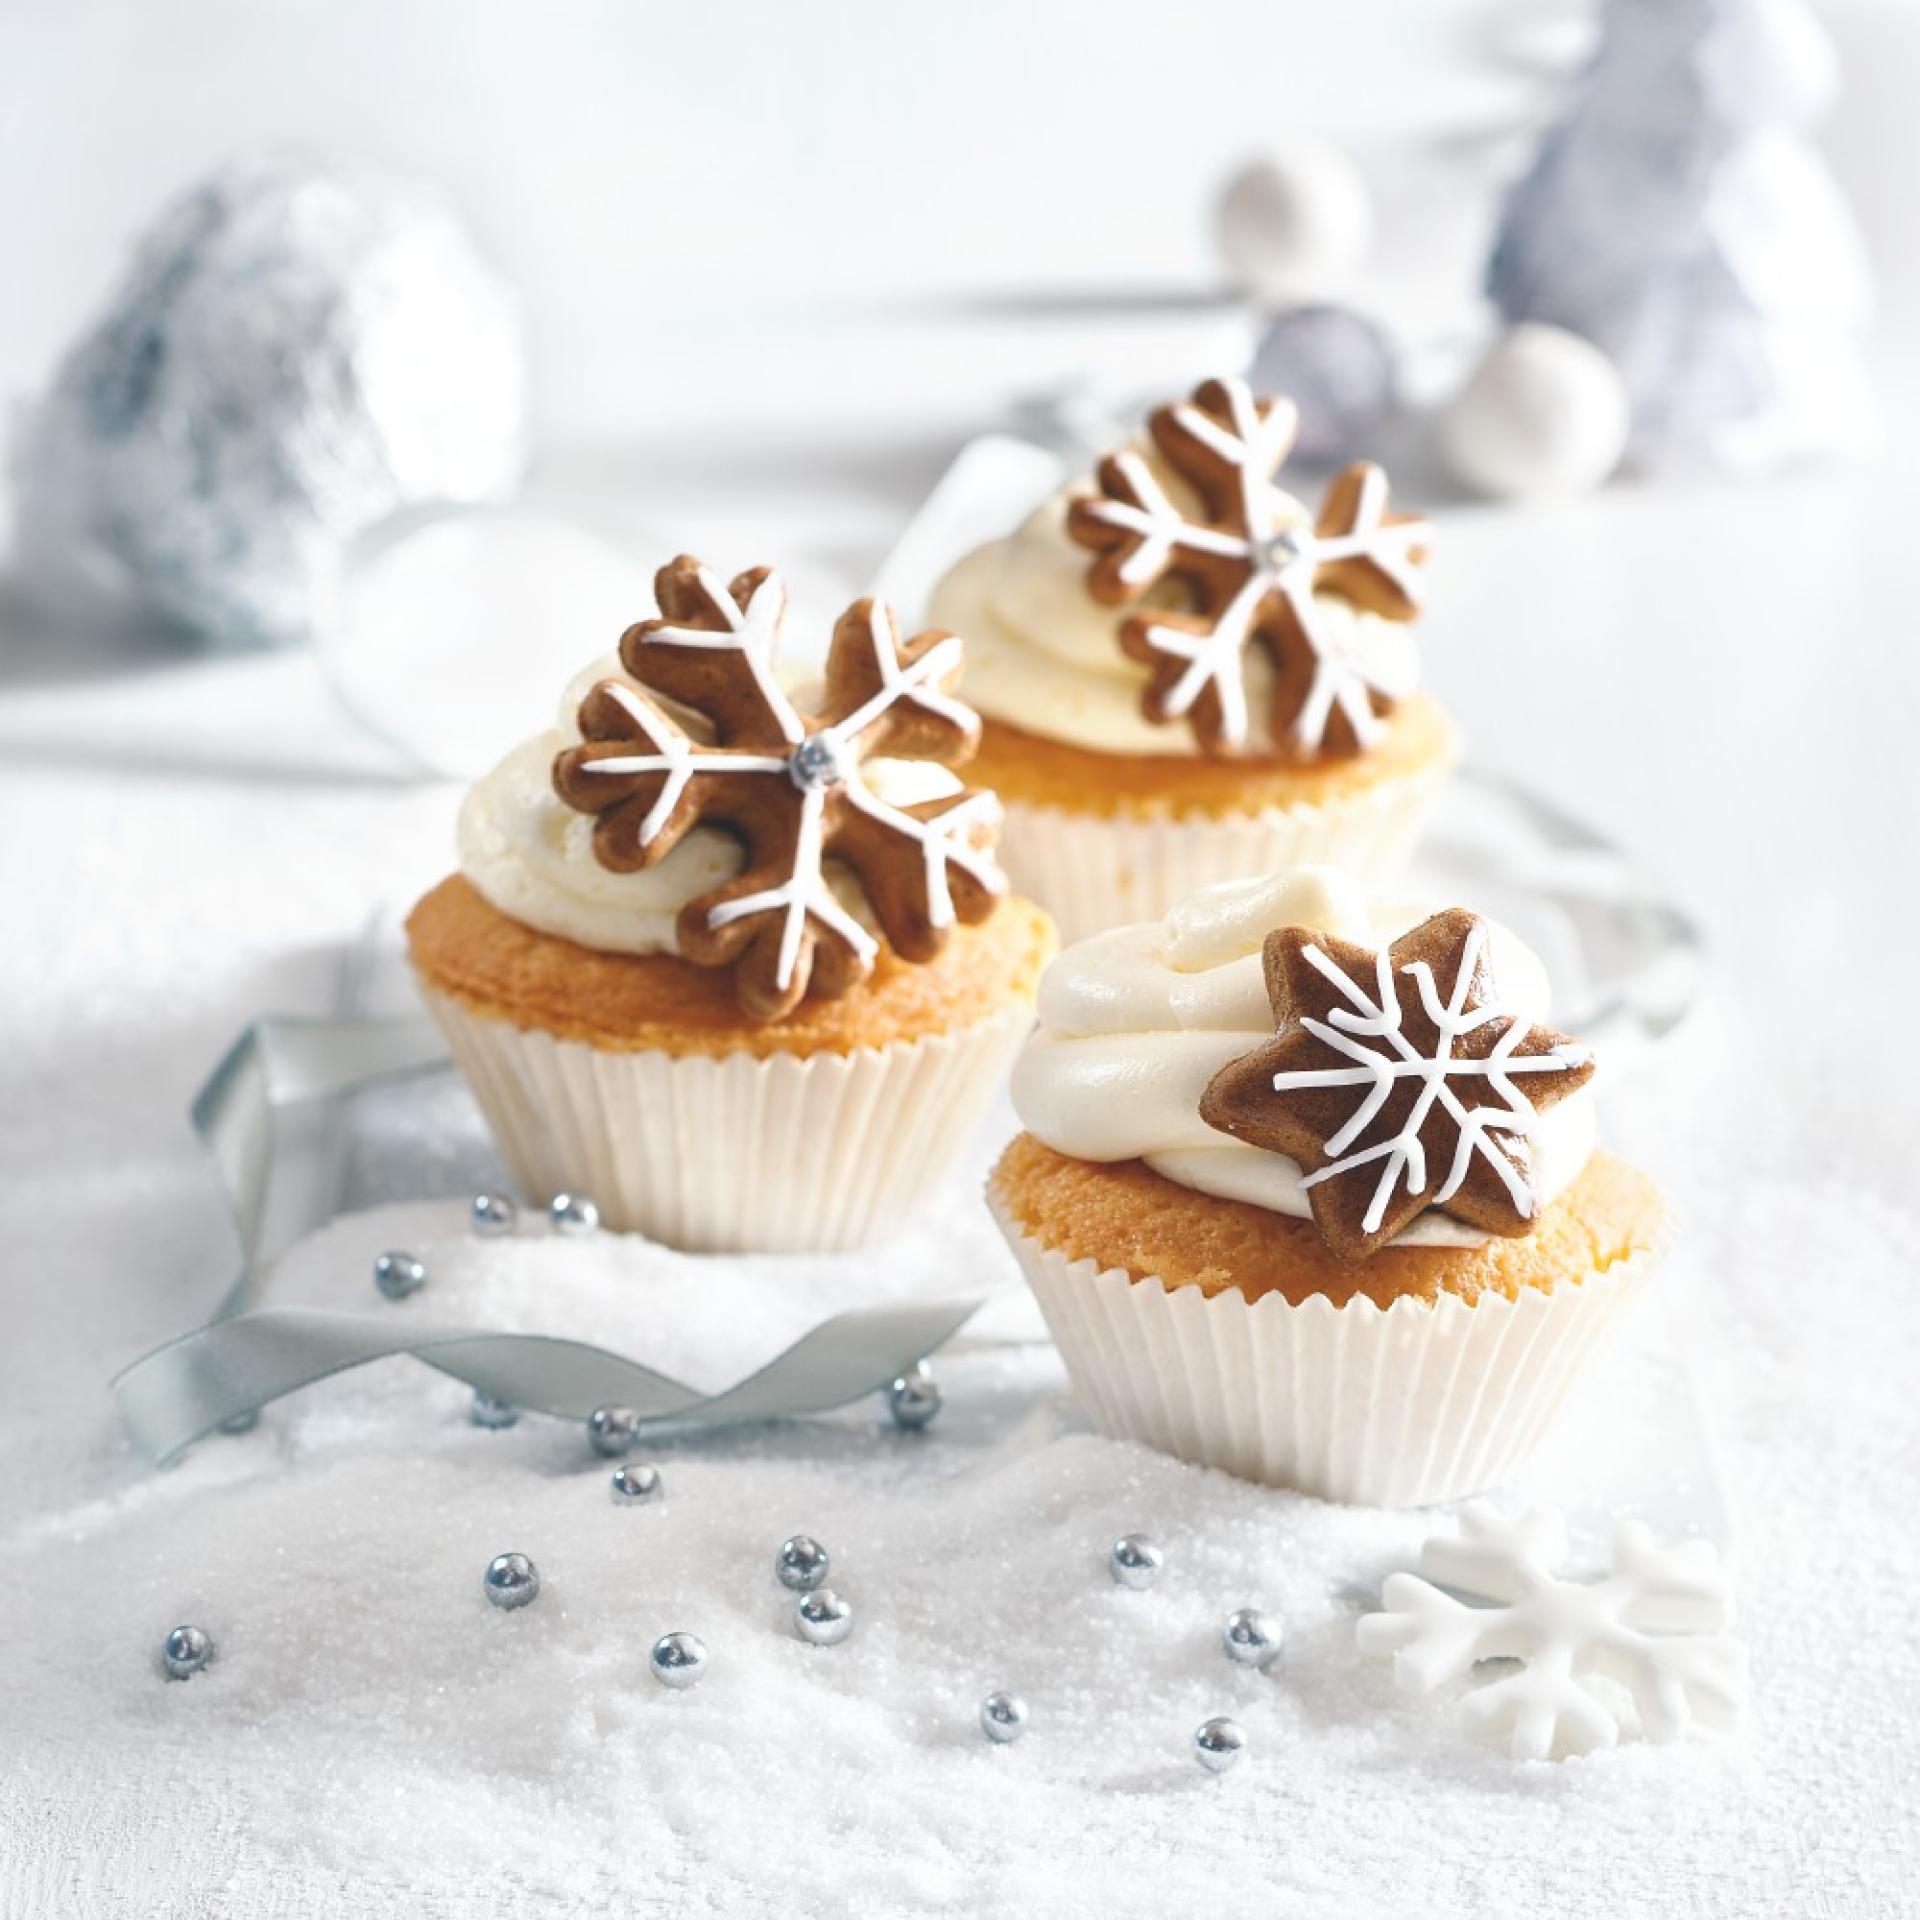 Vánoční cupcaky s medovými perníčky | Apetitonline.cz